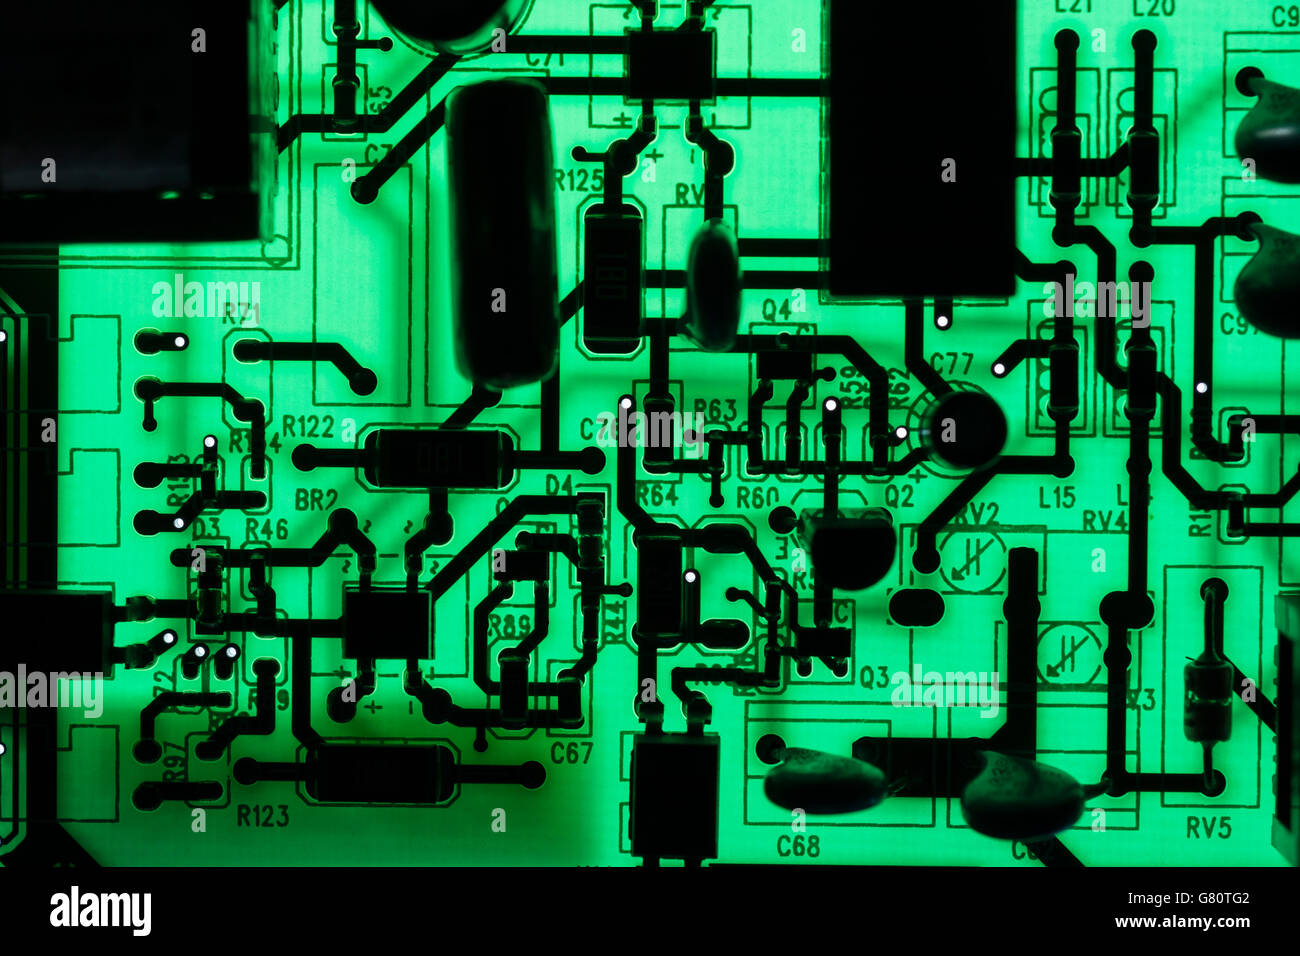 Concept de technologie informatique. Carte de circuit imprimé / carte de circuit imprimé montrant les composants rétroéclairés avec un voyant vert. Câblage à l'intérieur du calculateur, gros plan du circuit, électronique. Banque D'Images